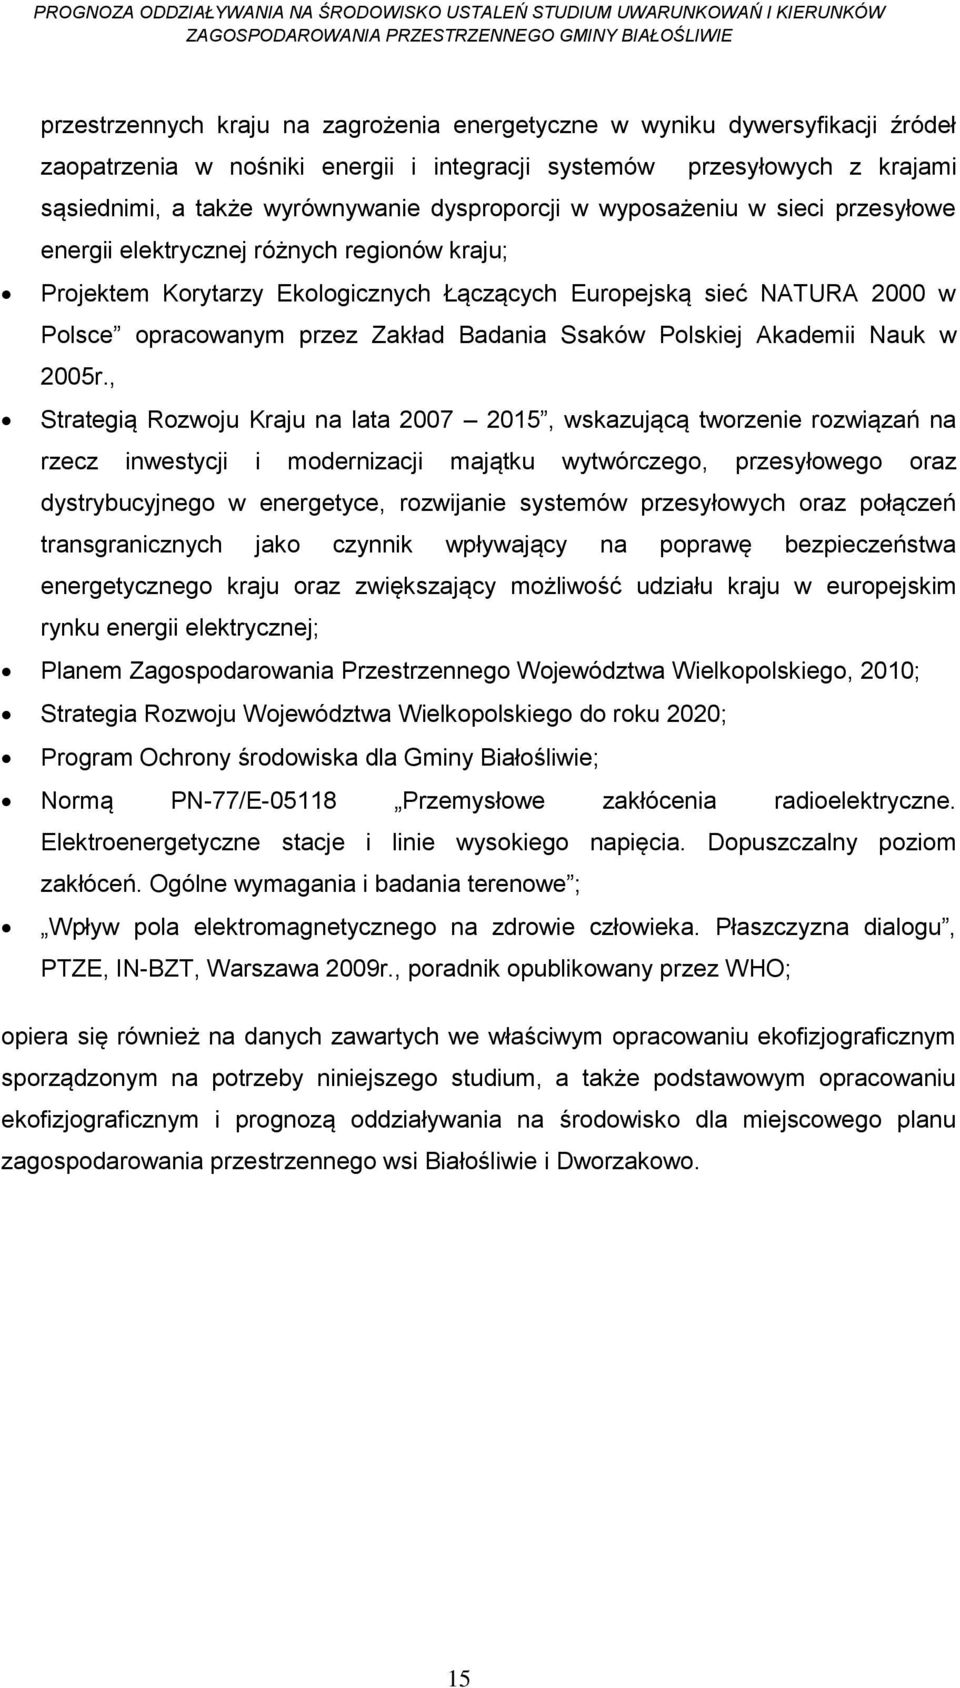 Badania Ssaków Polskiej Akademii Nauk w 2005r.